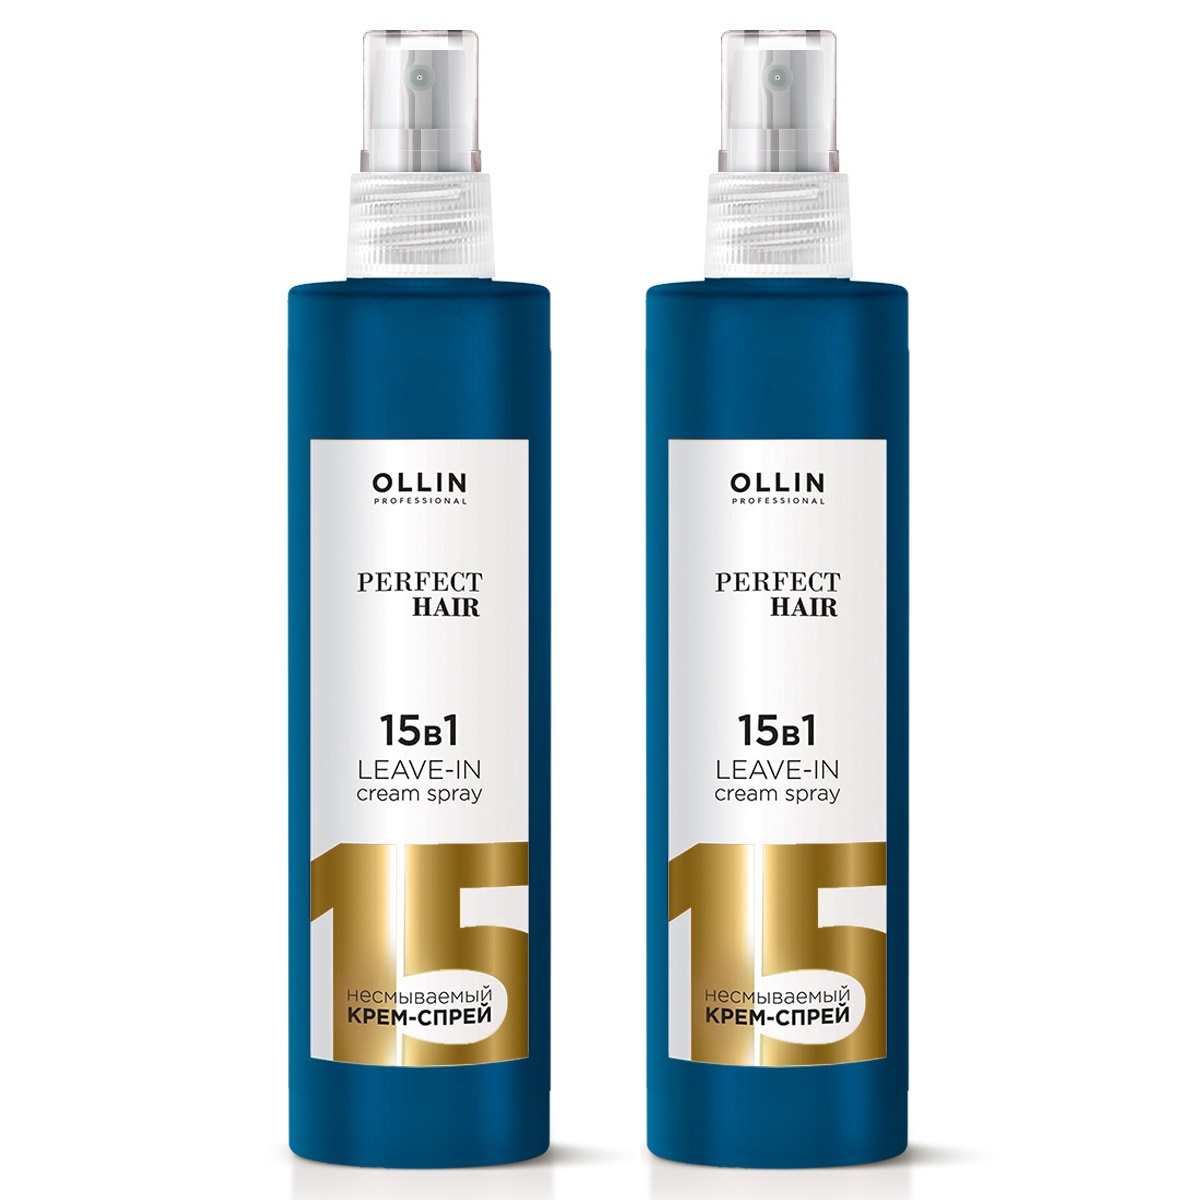 Крем-спрей для волос Ollin Professional Perfect Hair 15 в 1 несмываемый 250 мл 2 шт жена государственной важности